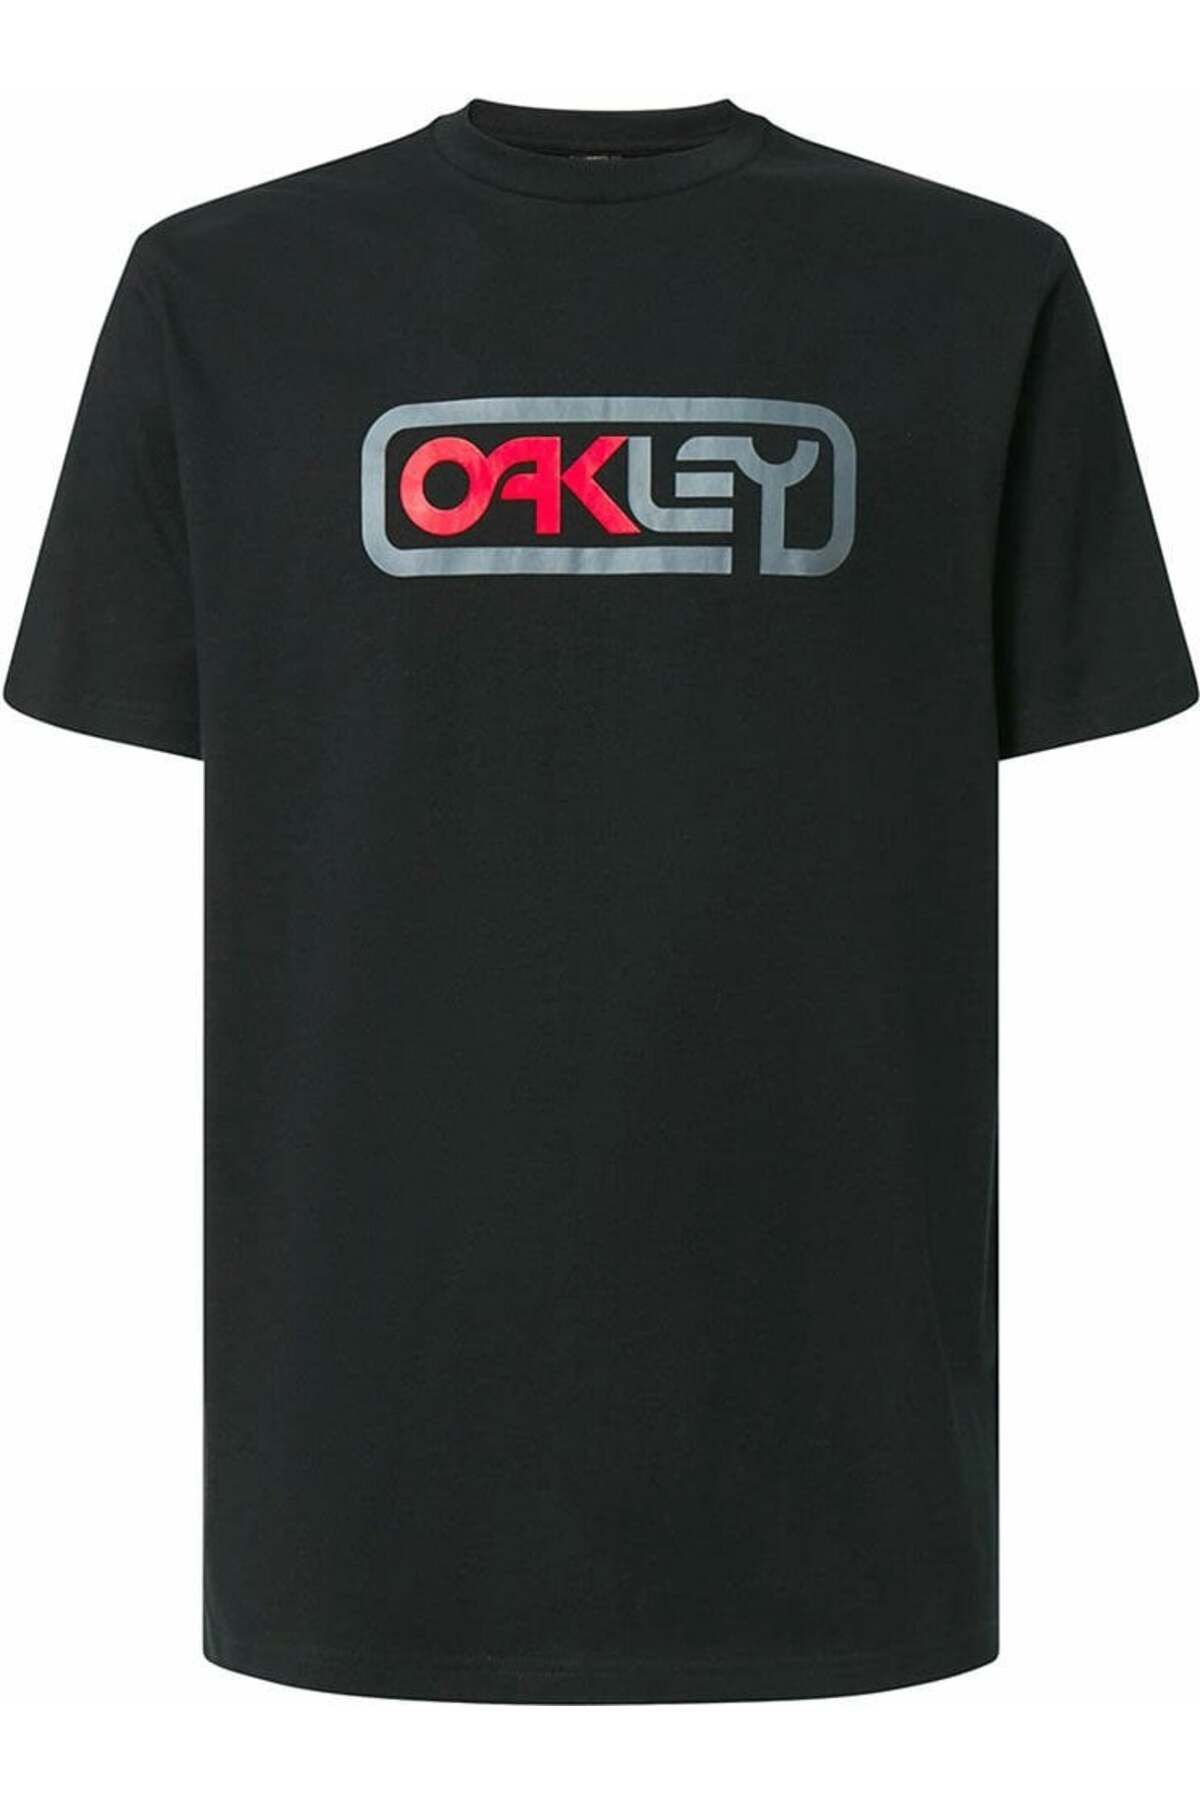 Oakley Locked In B1b Tee Erkek T-shirt